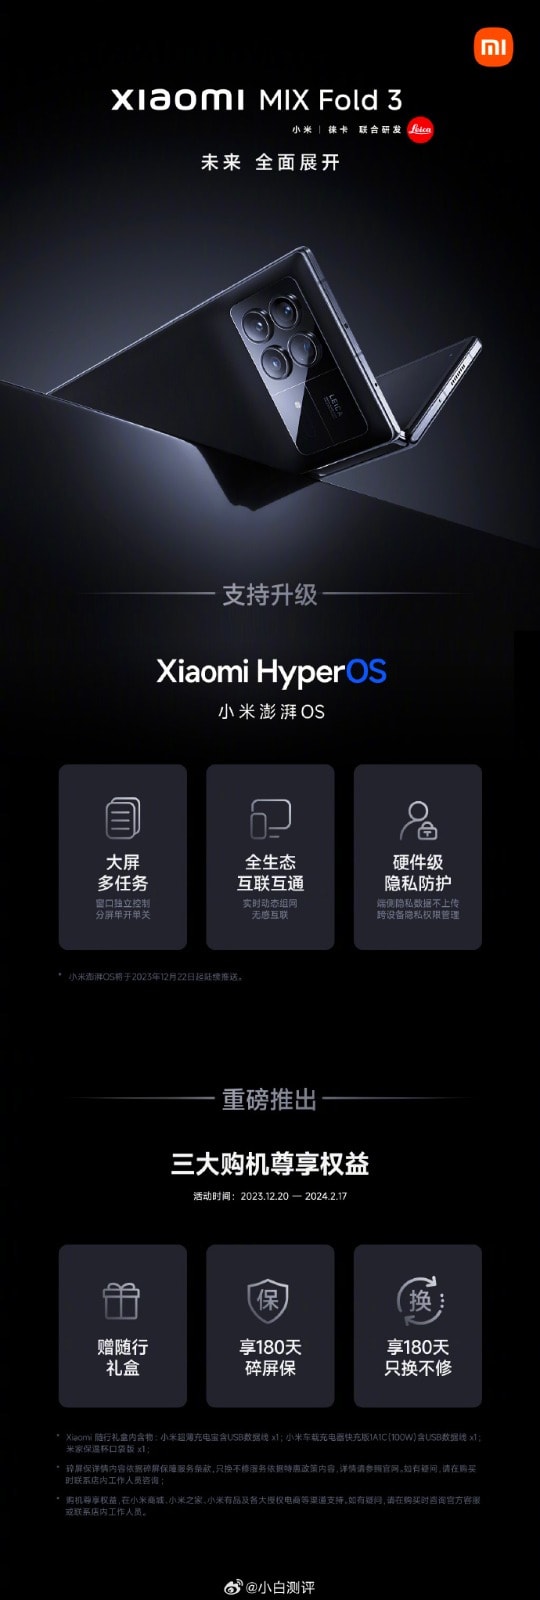 Xiaomi Mix Fold 3 - HyperOS Update